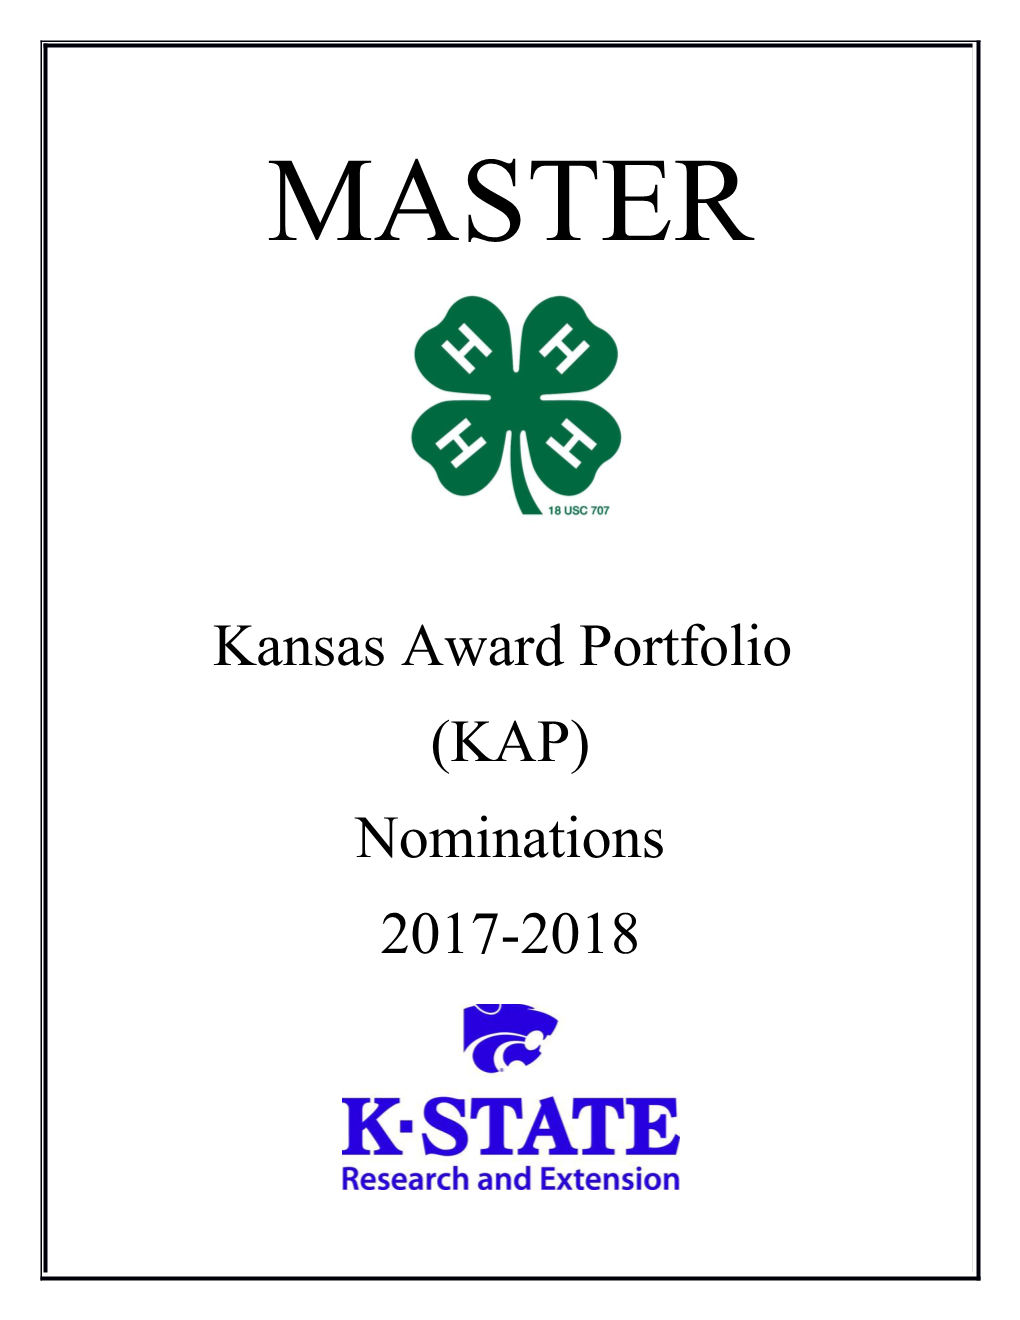 Kansas Award Portfolio